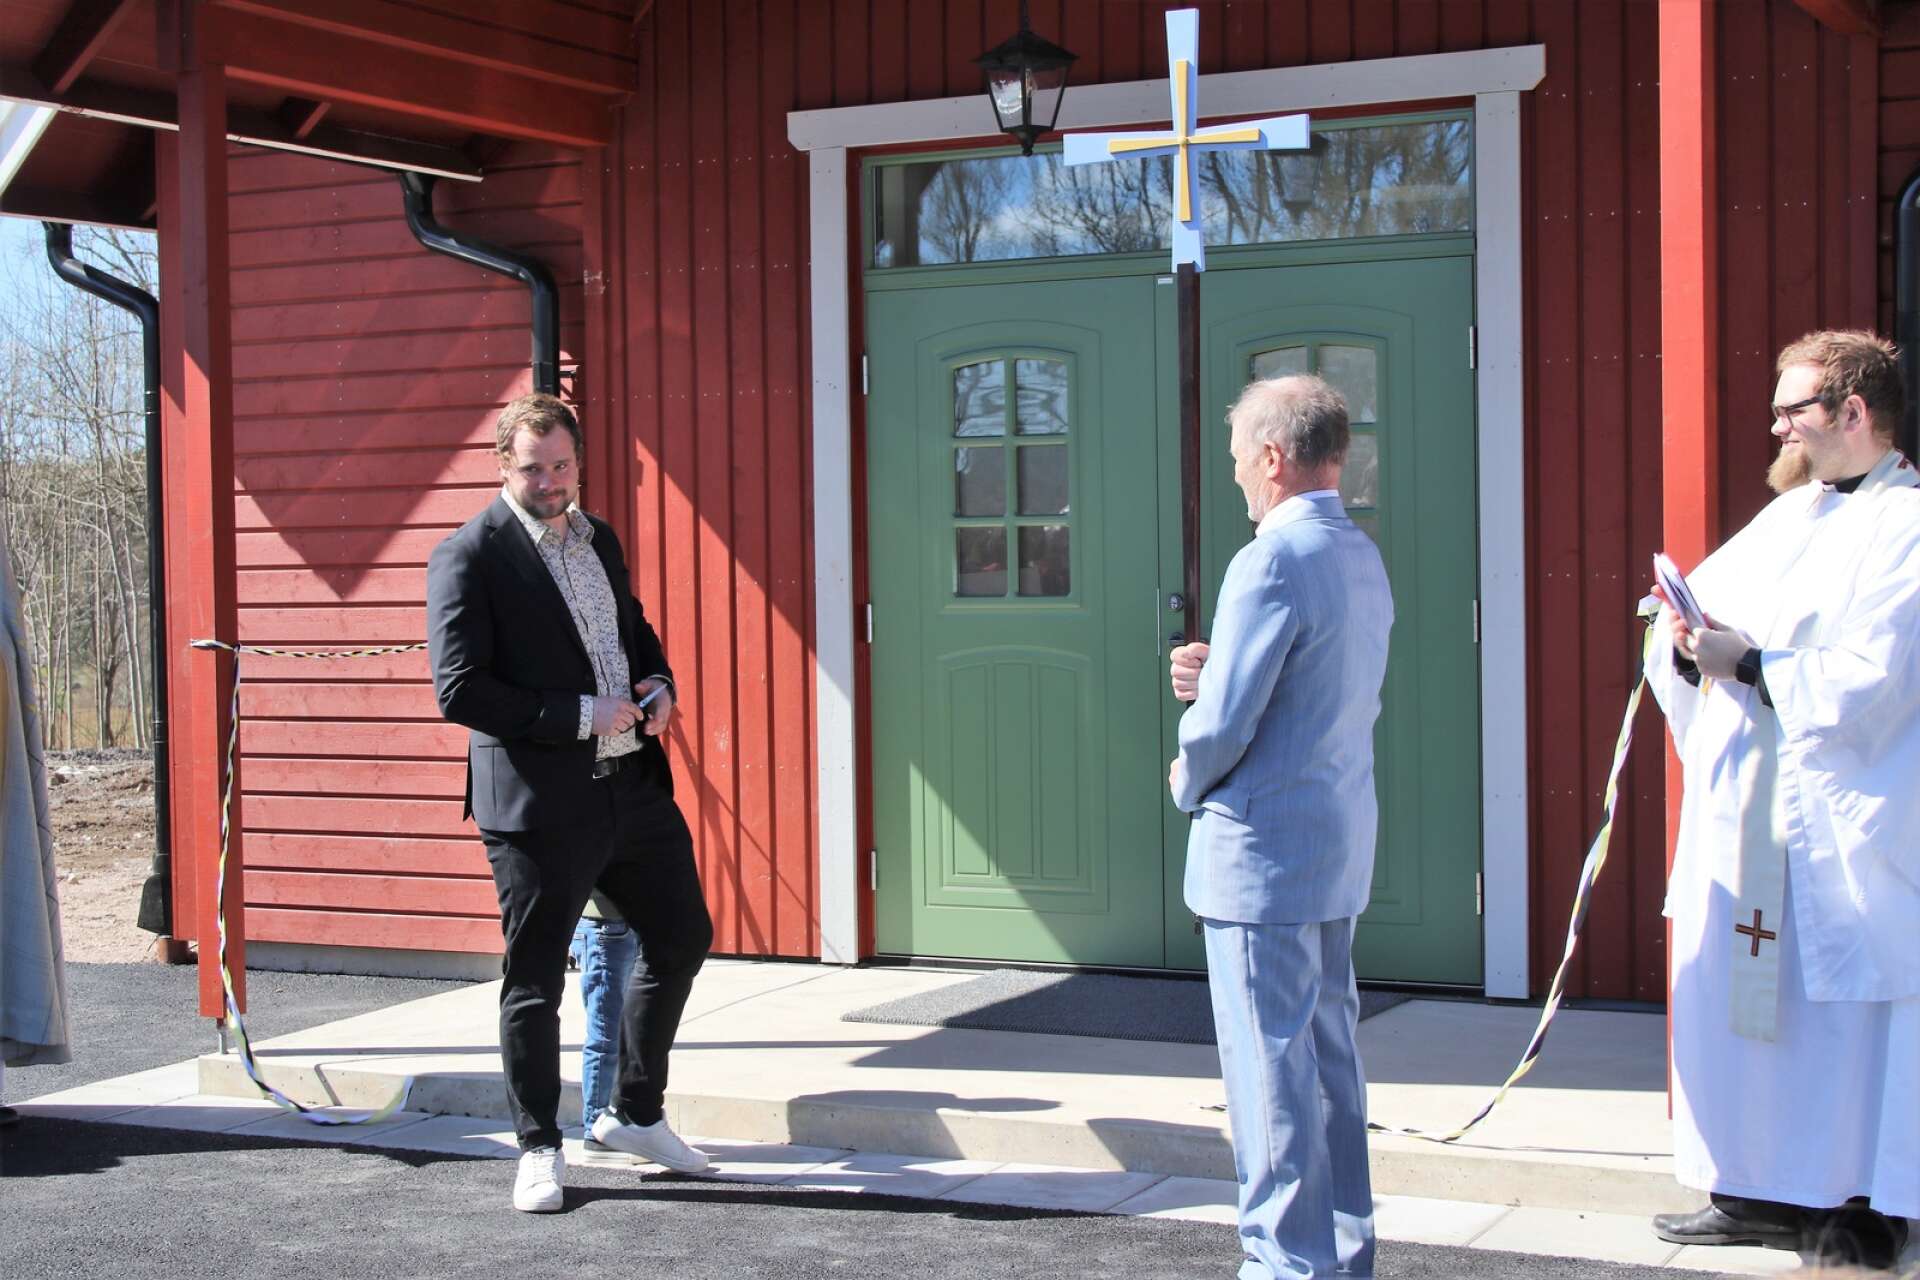 Det var Åmåls församlings fastighetsansvarige Martin Hallberg som fick hedersuppdraget att klippa bandet och därmed inviga det nya församlingshemmet i Fröskog. 